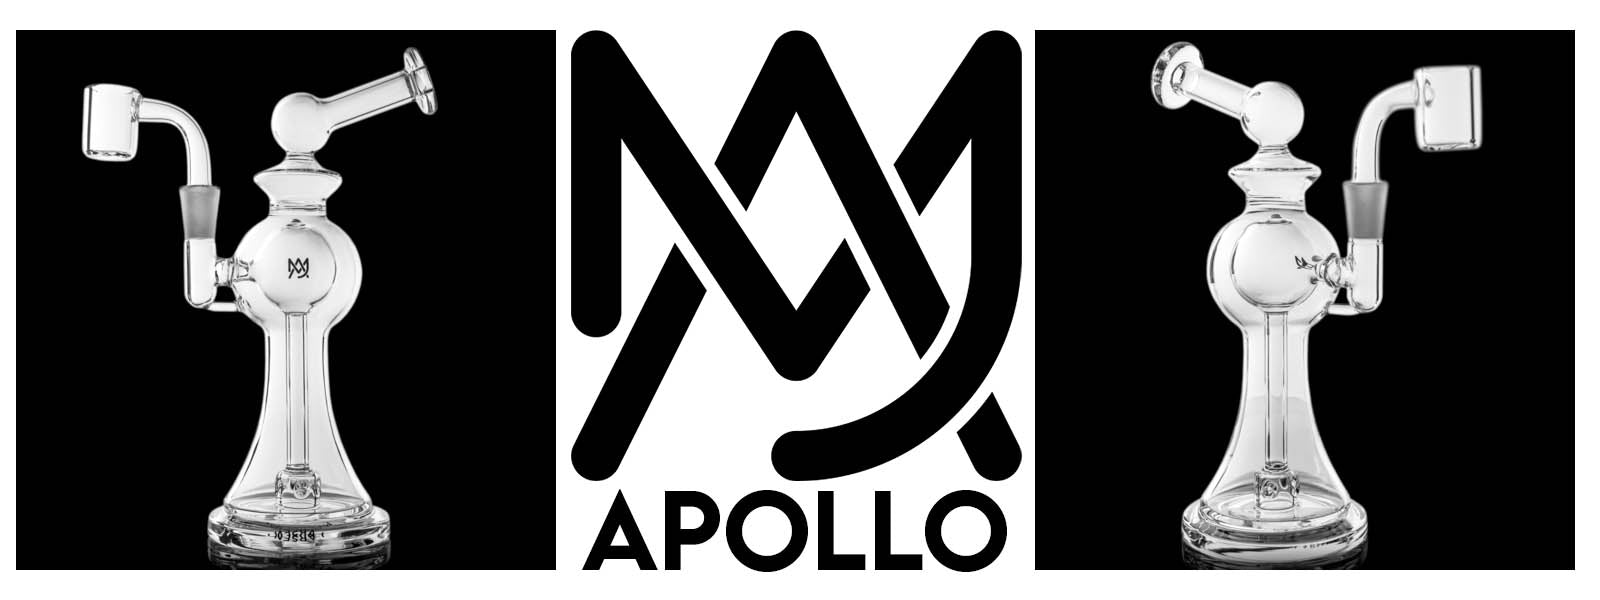 MJ Arsenal - Apollo (Orbit Serries)